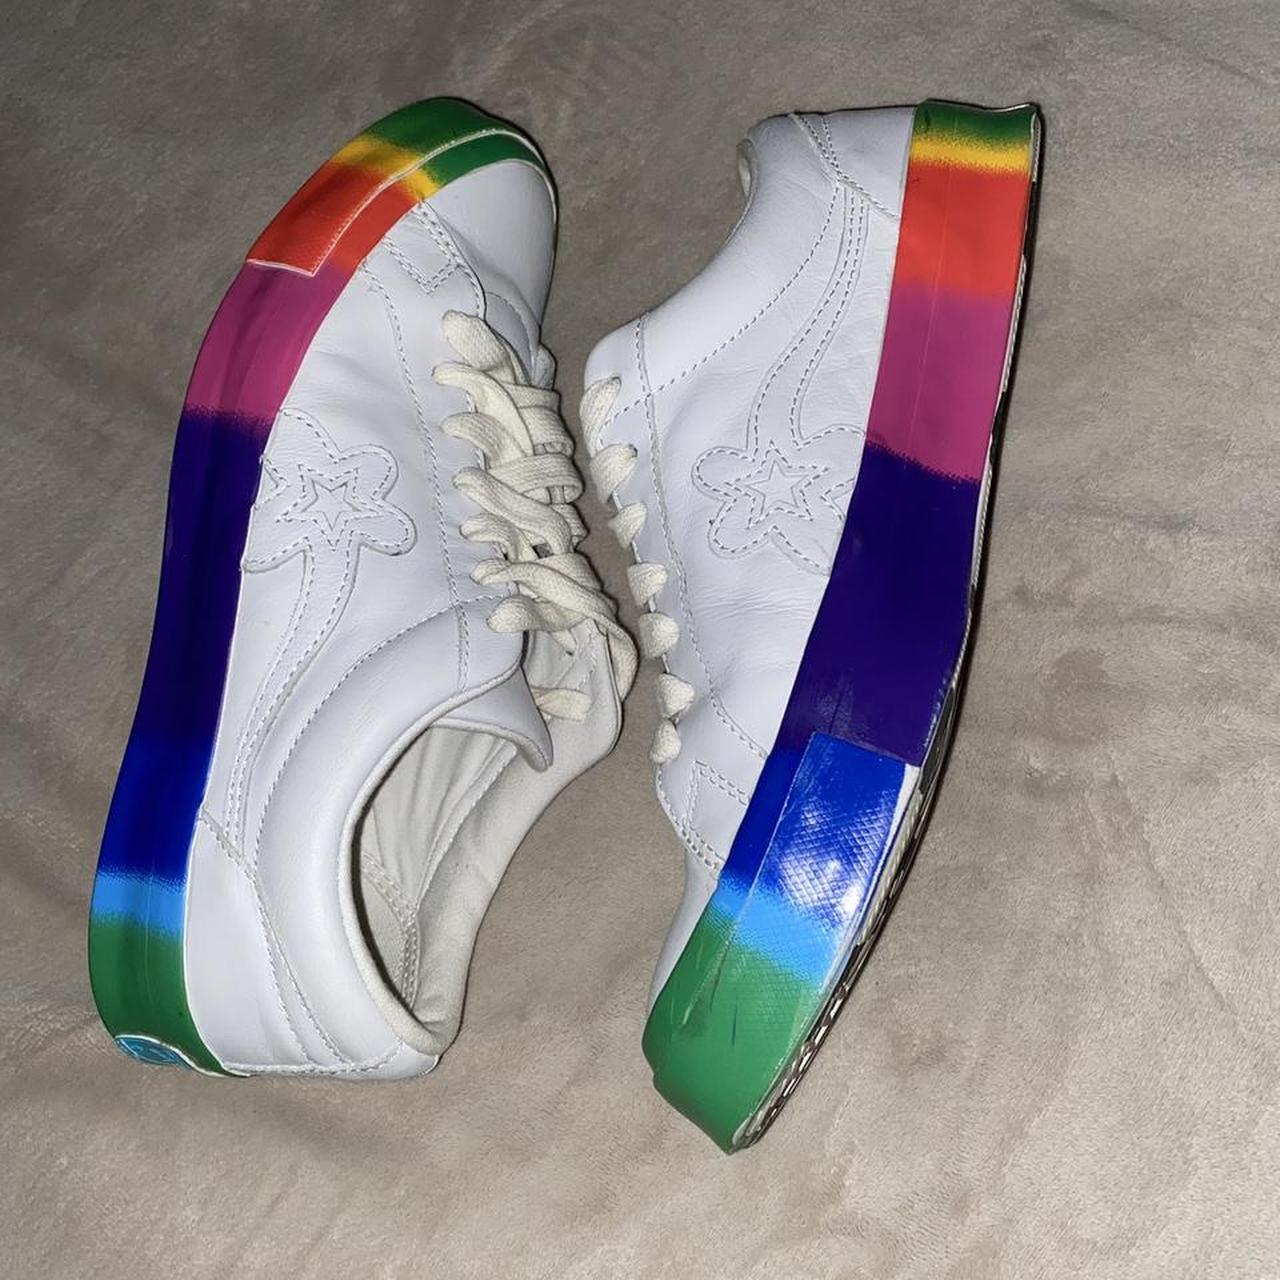 Product Image 1 - Golf Le Fleur Rainbow shoes.